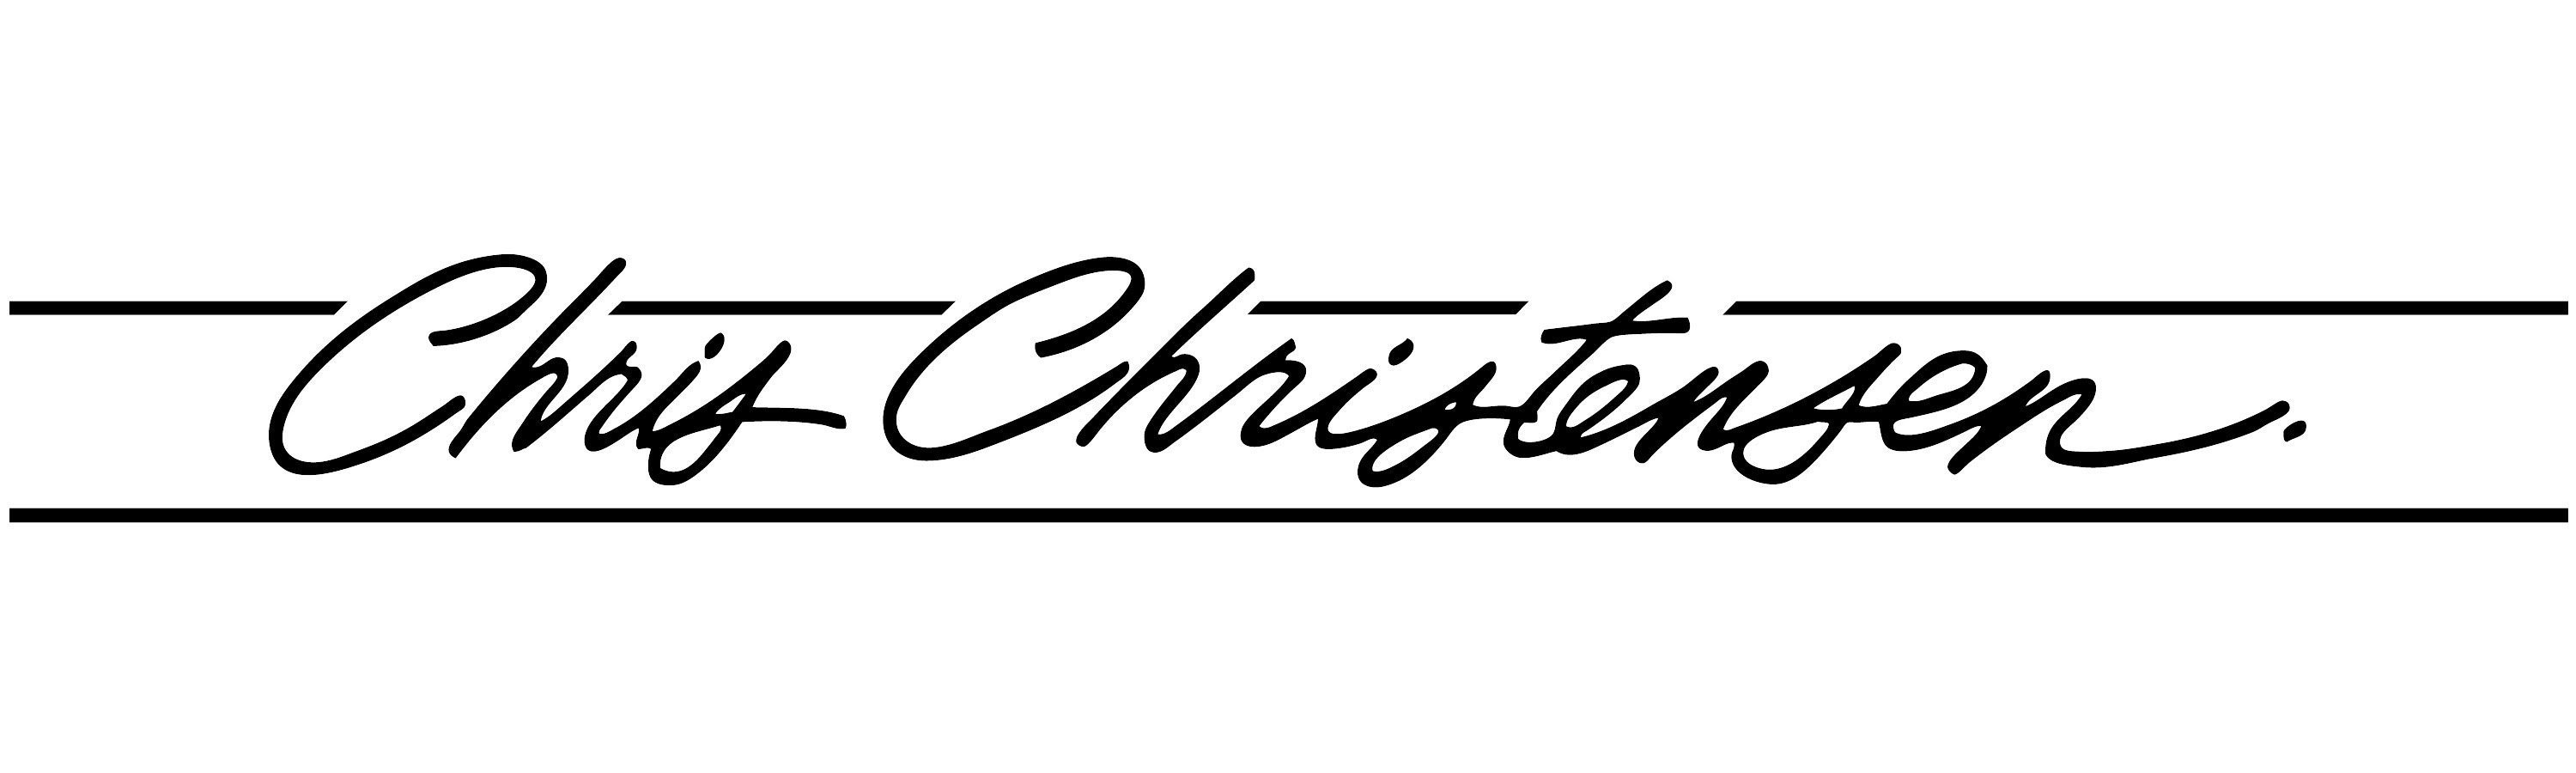 Chris Christensen brand logo